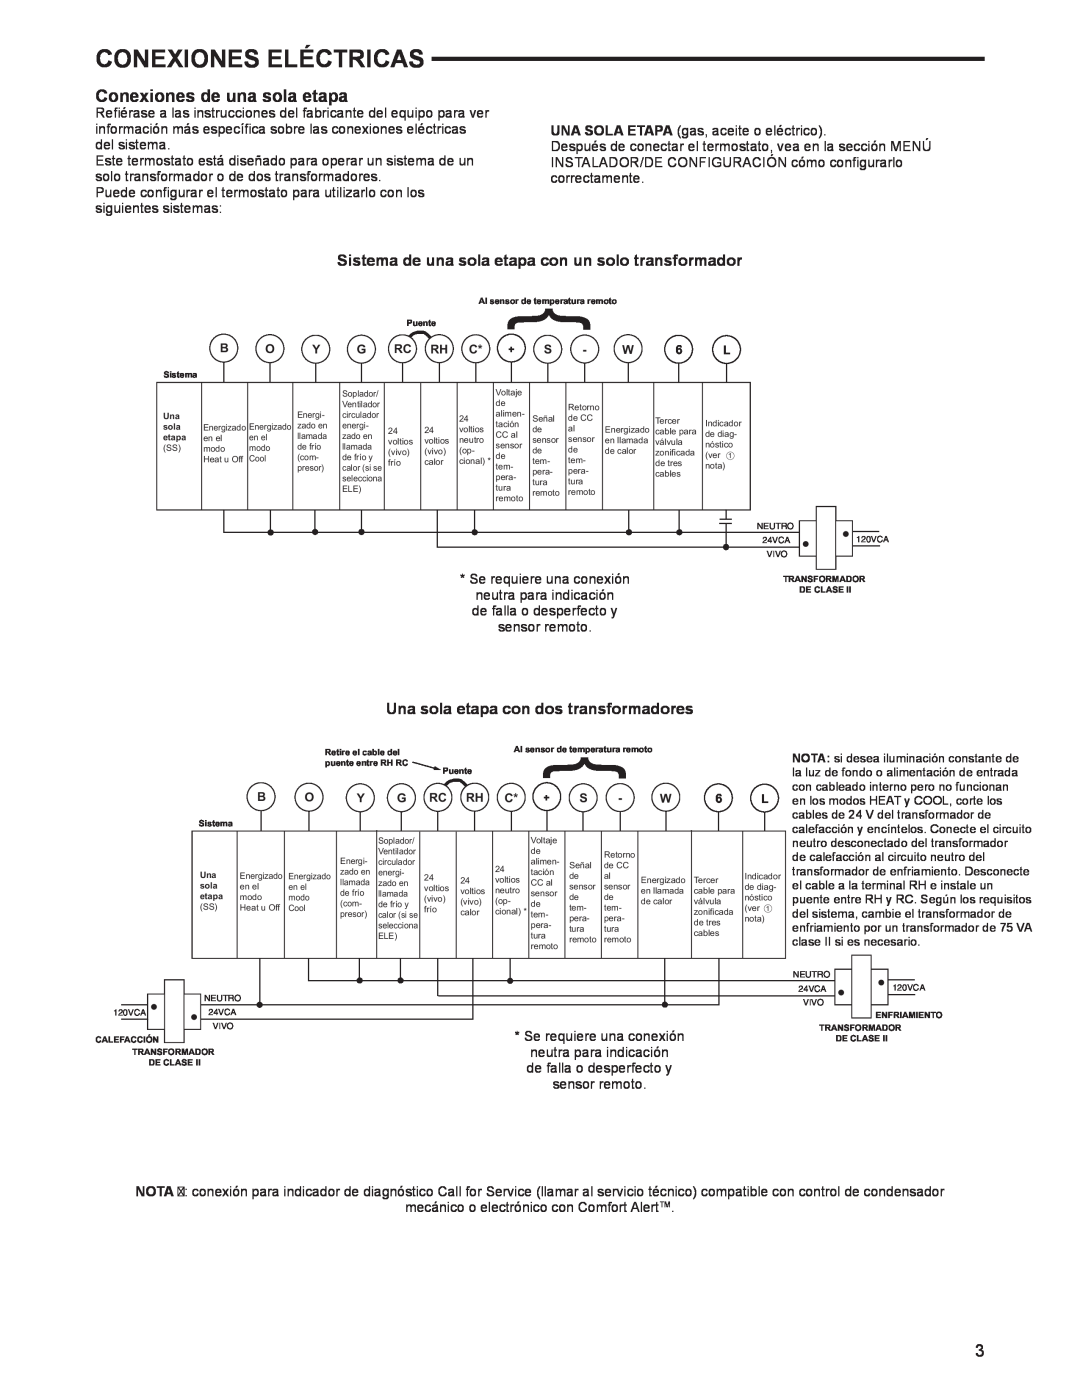 White Rodgers 1F97-1277 manual Conexiones de una sola etapa, Una sola etapa con dos transformadores, Conexiones Eléctricas 